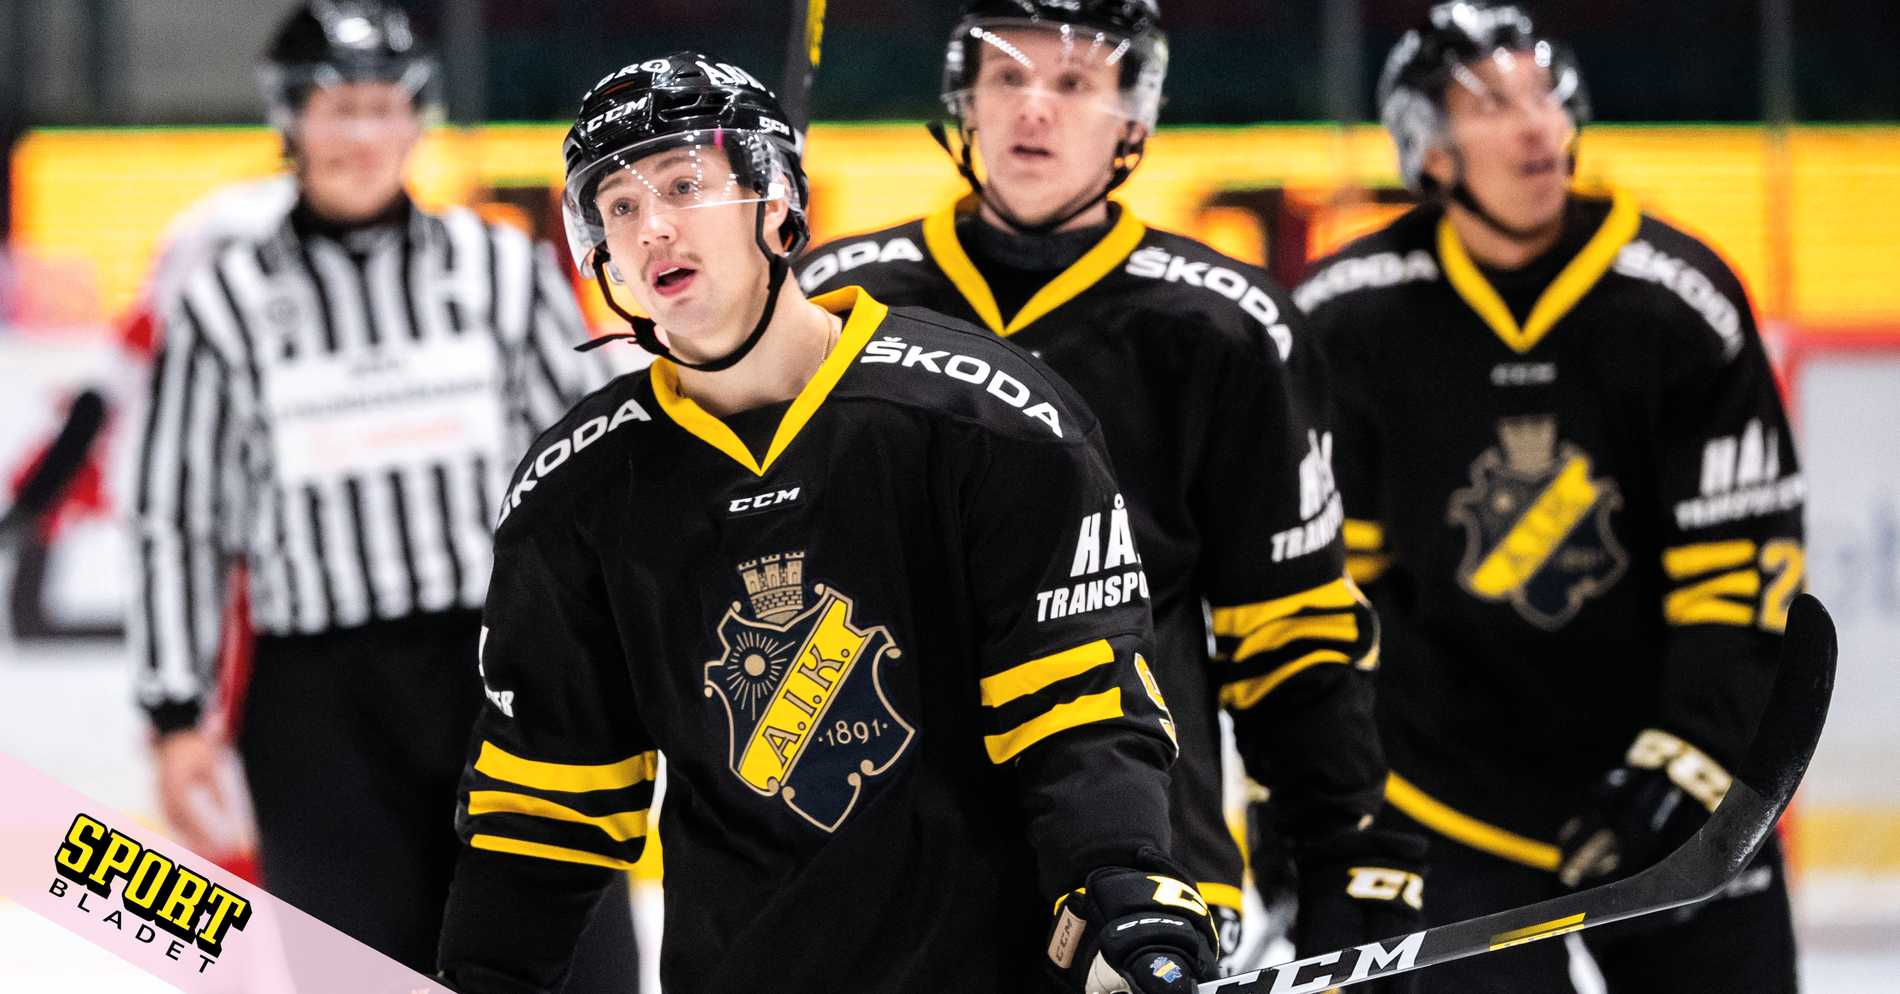 AIK Hockey: Krisen total i AIK: ”Det är åt helvete såklart”